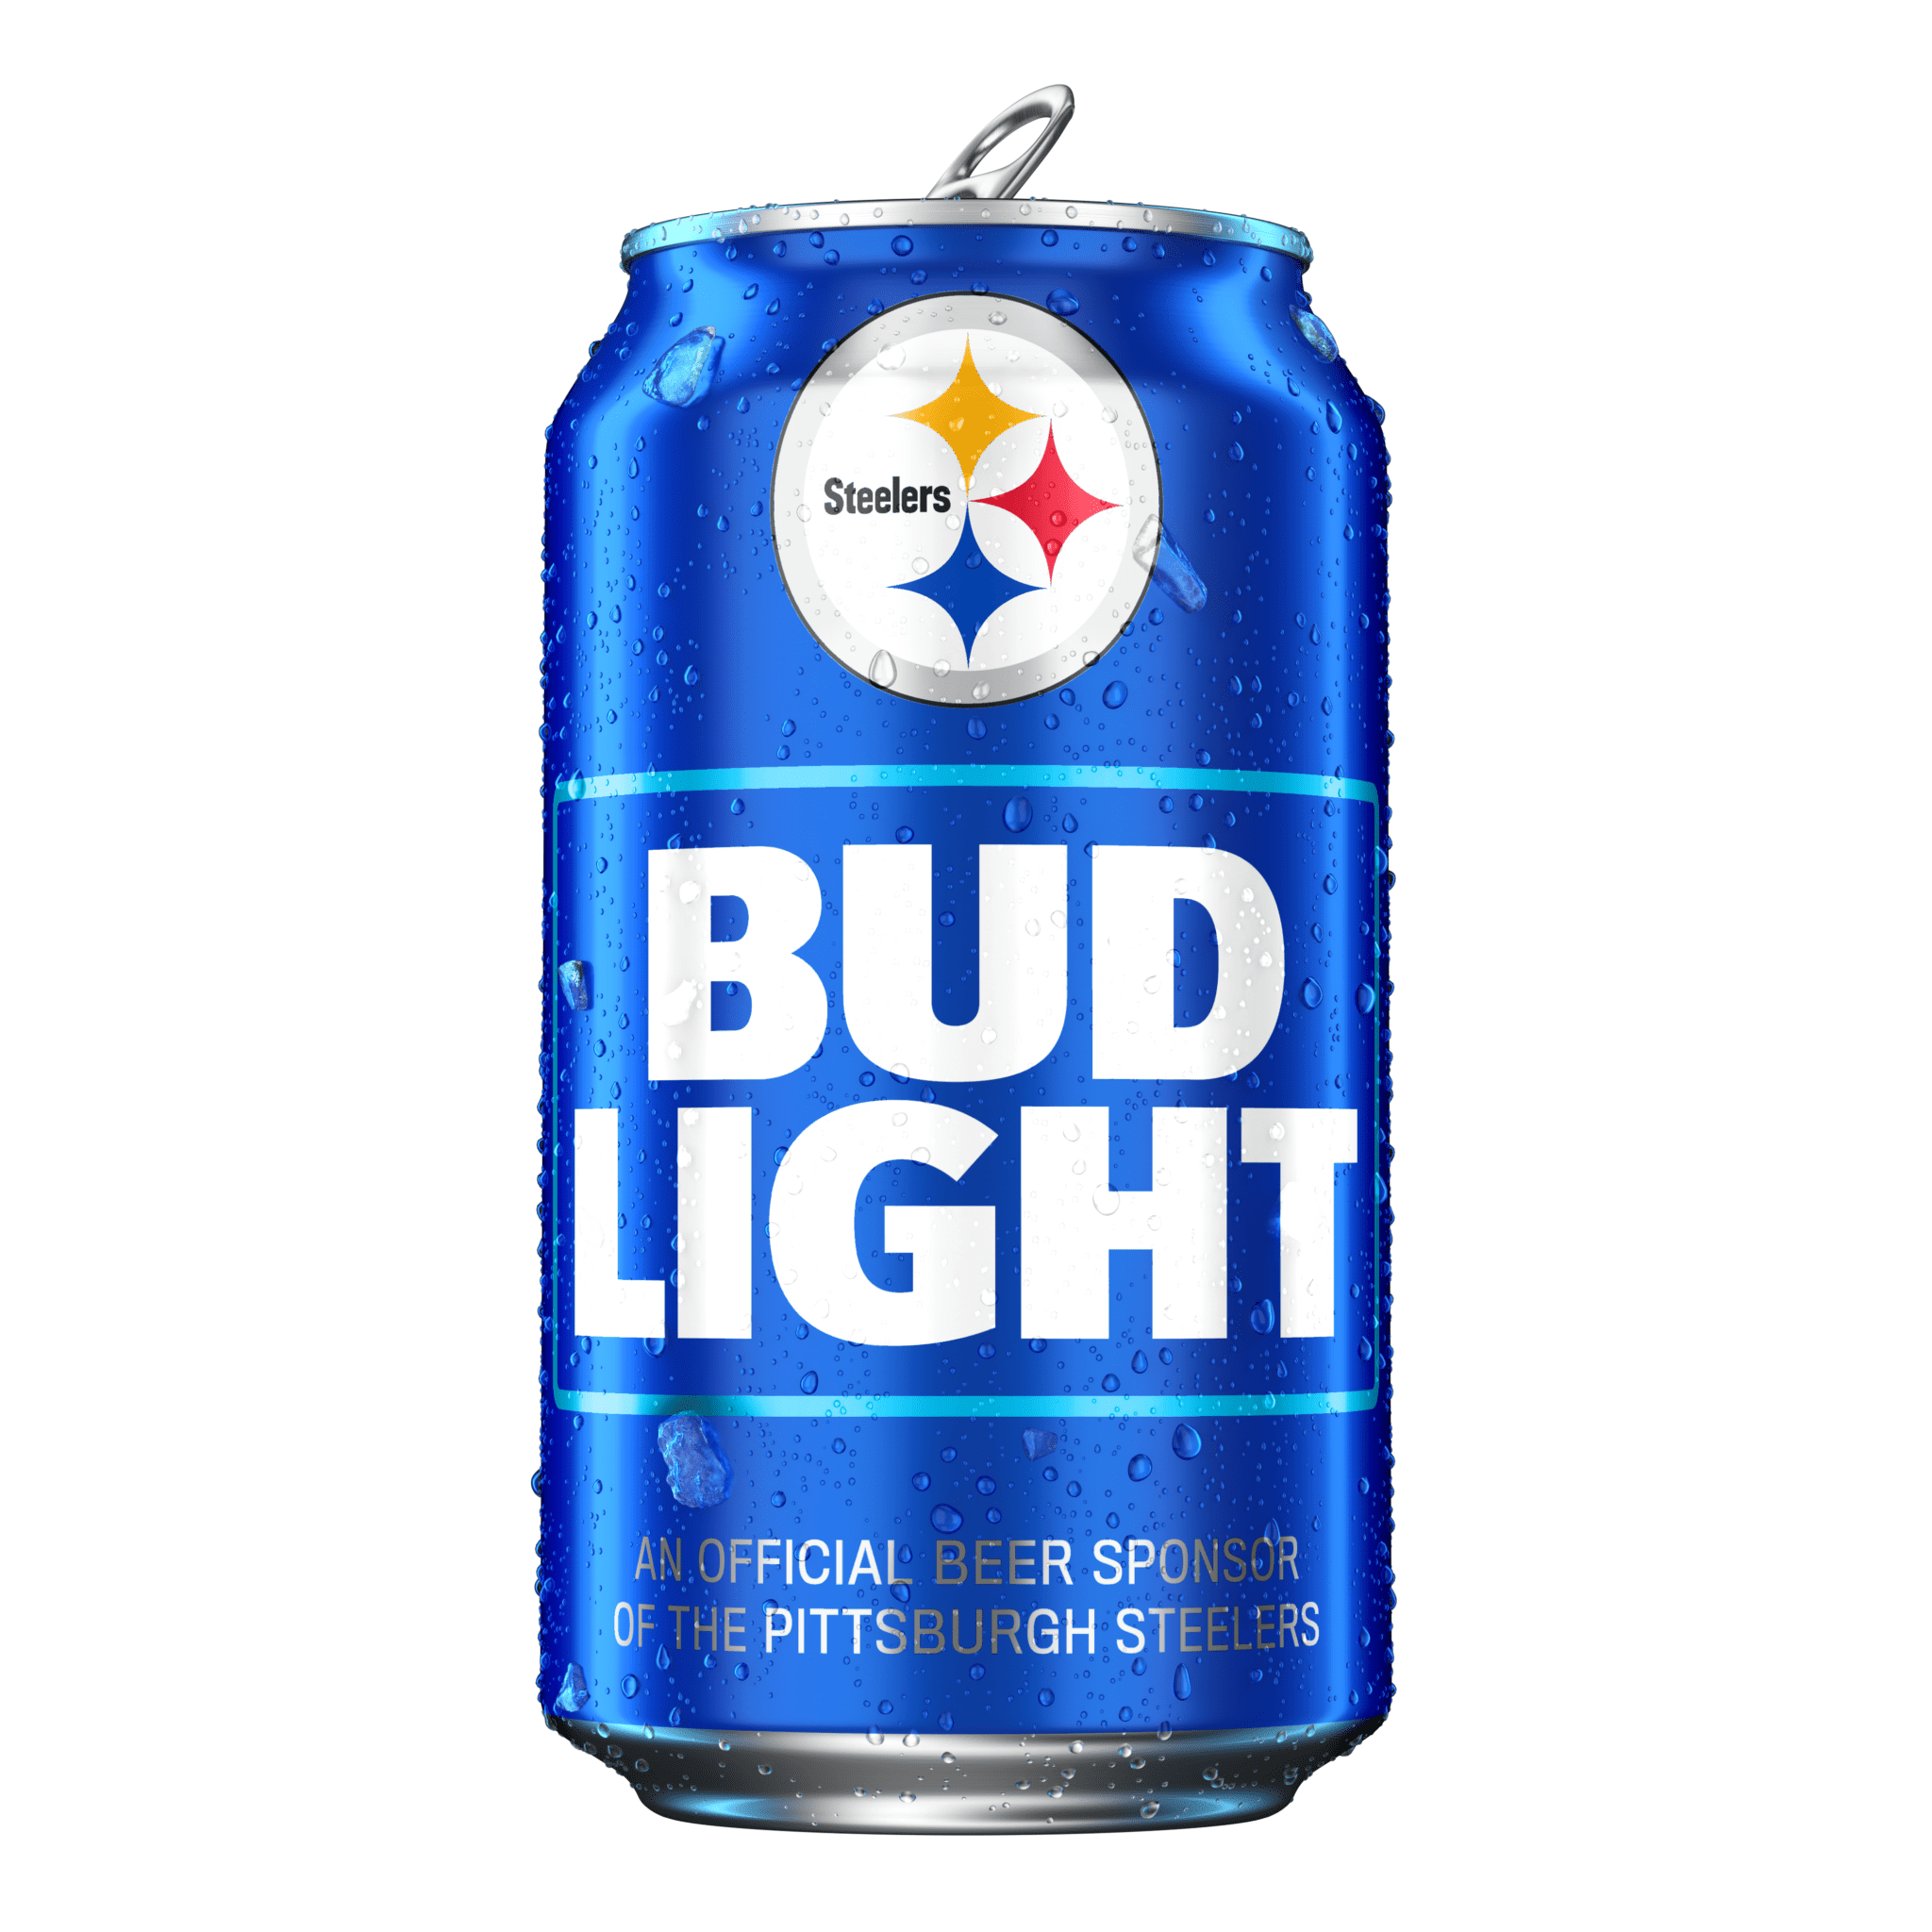 Steelers Bud Light